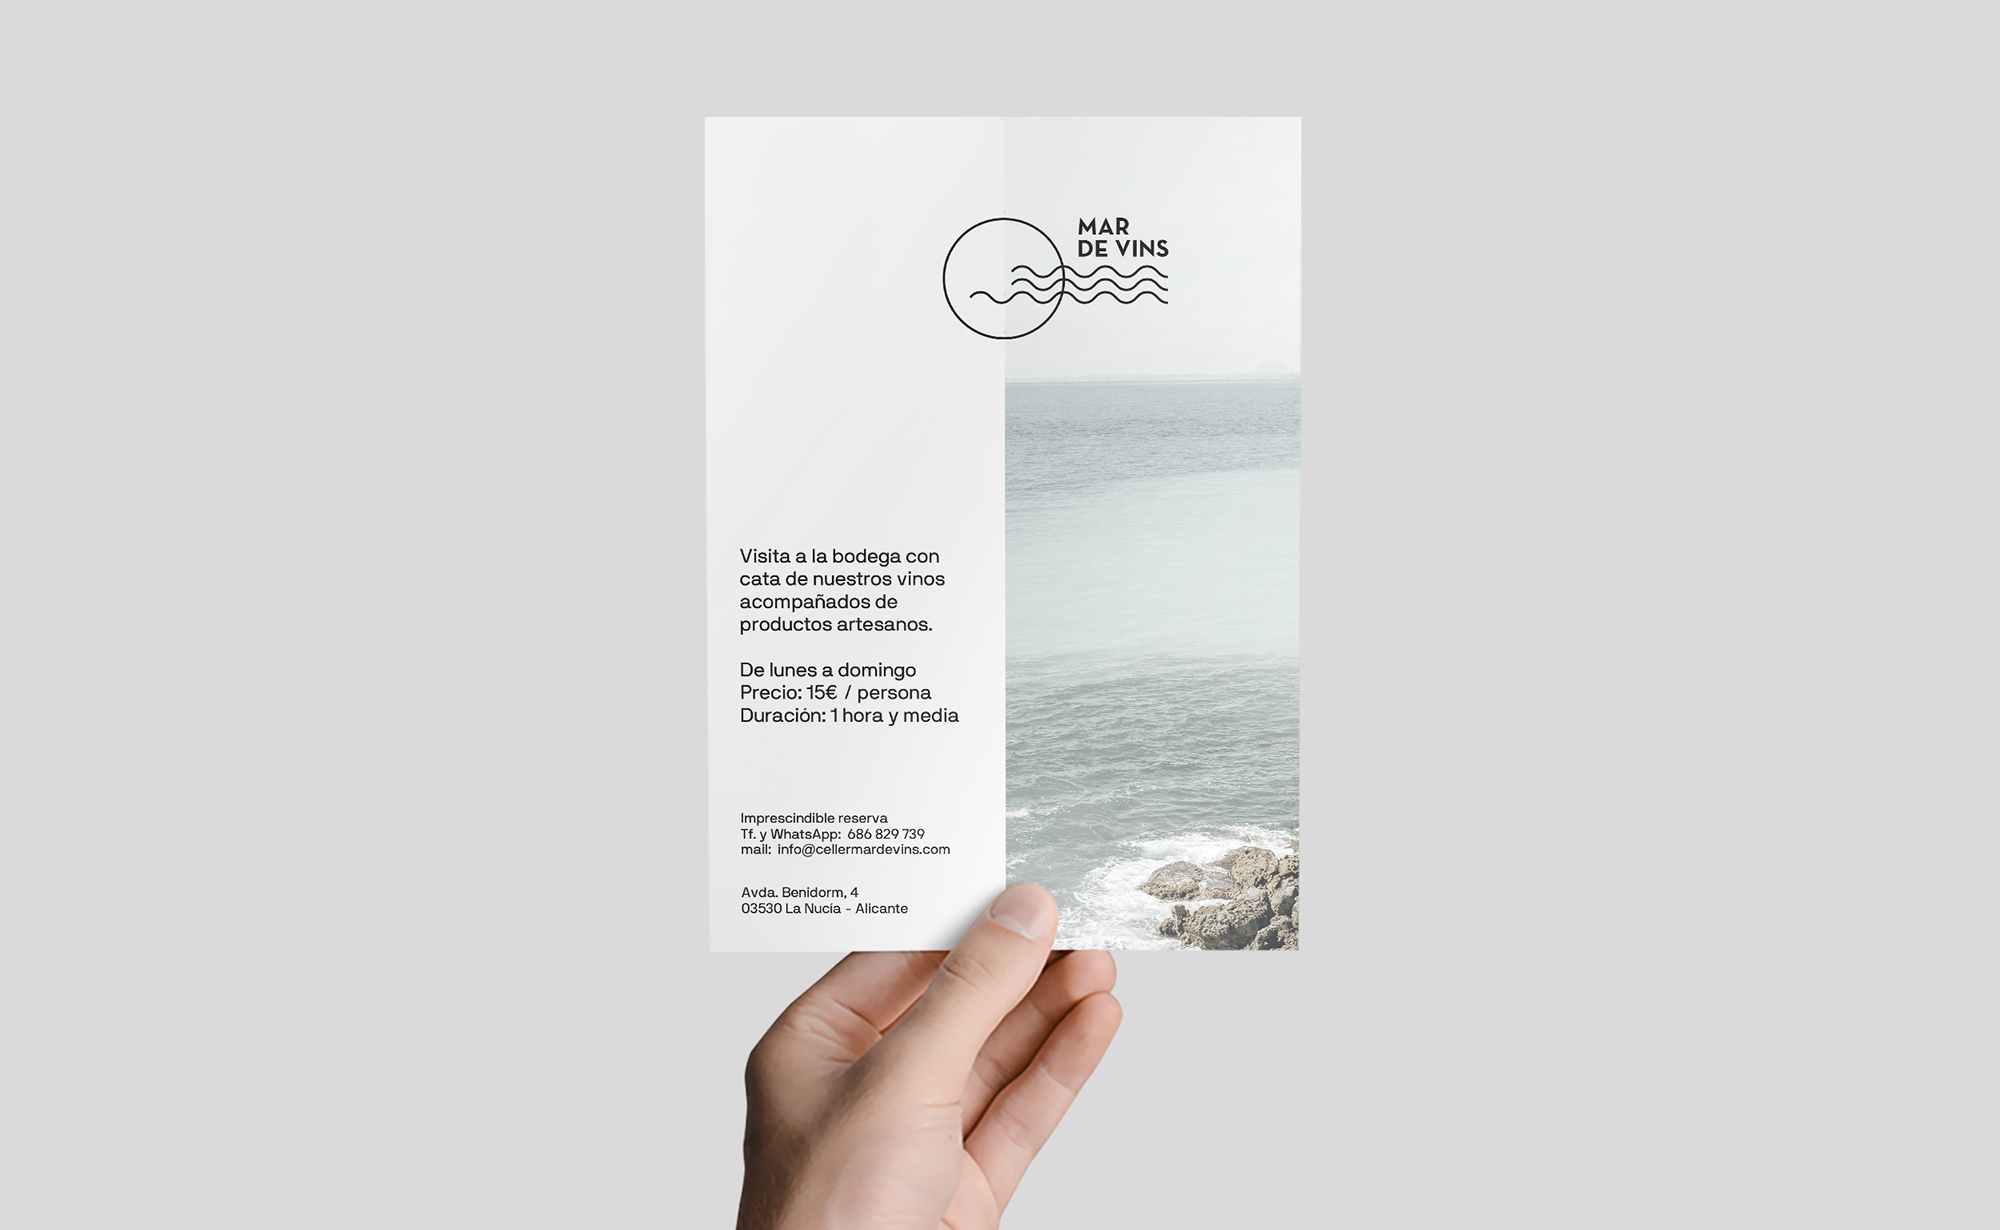 Diseño y desarrollo de identidad visual corporativa para Celler Mar de Vins. Flyer.